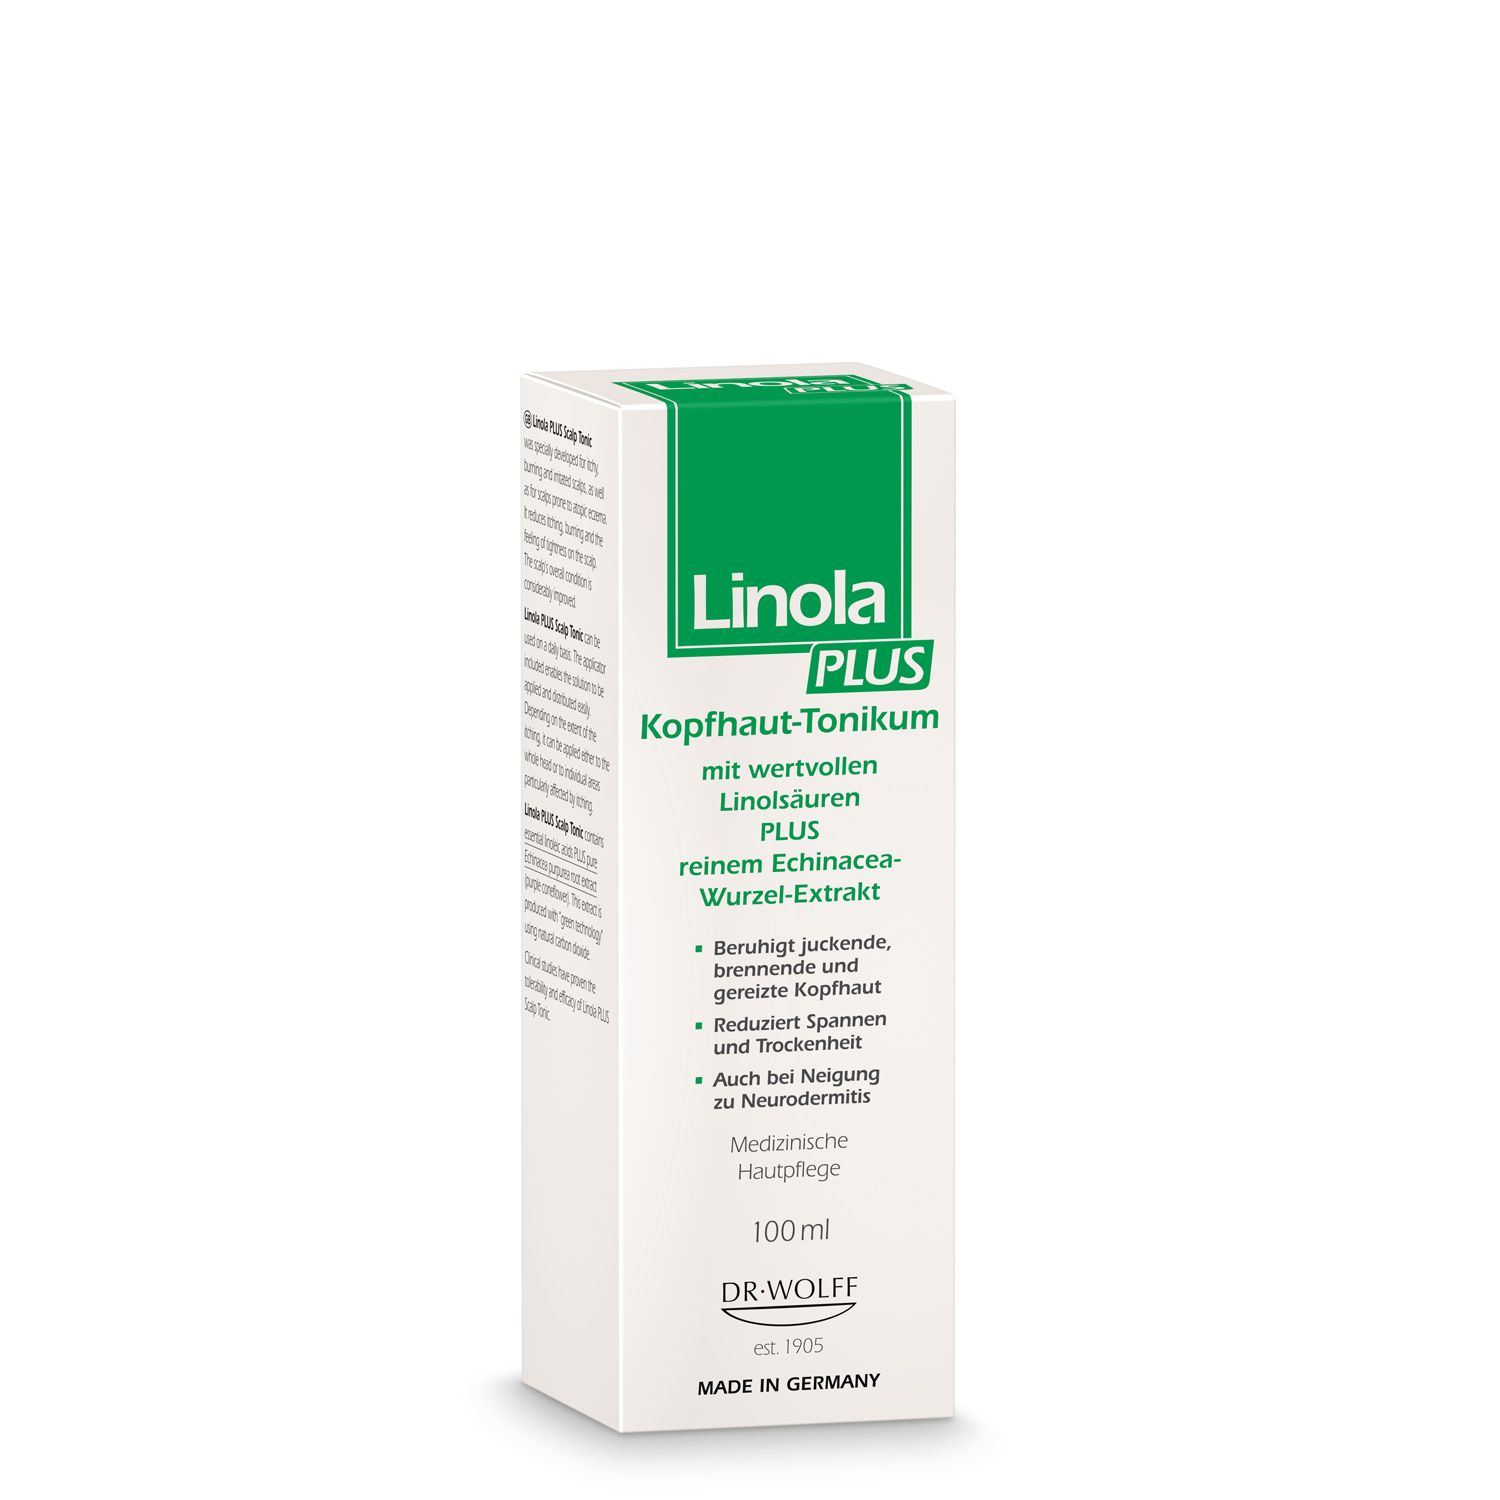 Linola PLUS Kopfhaut-Tonikum - Haartonikum für juckende, brennende oder gereizte Kopfhaut